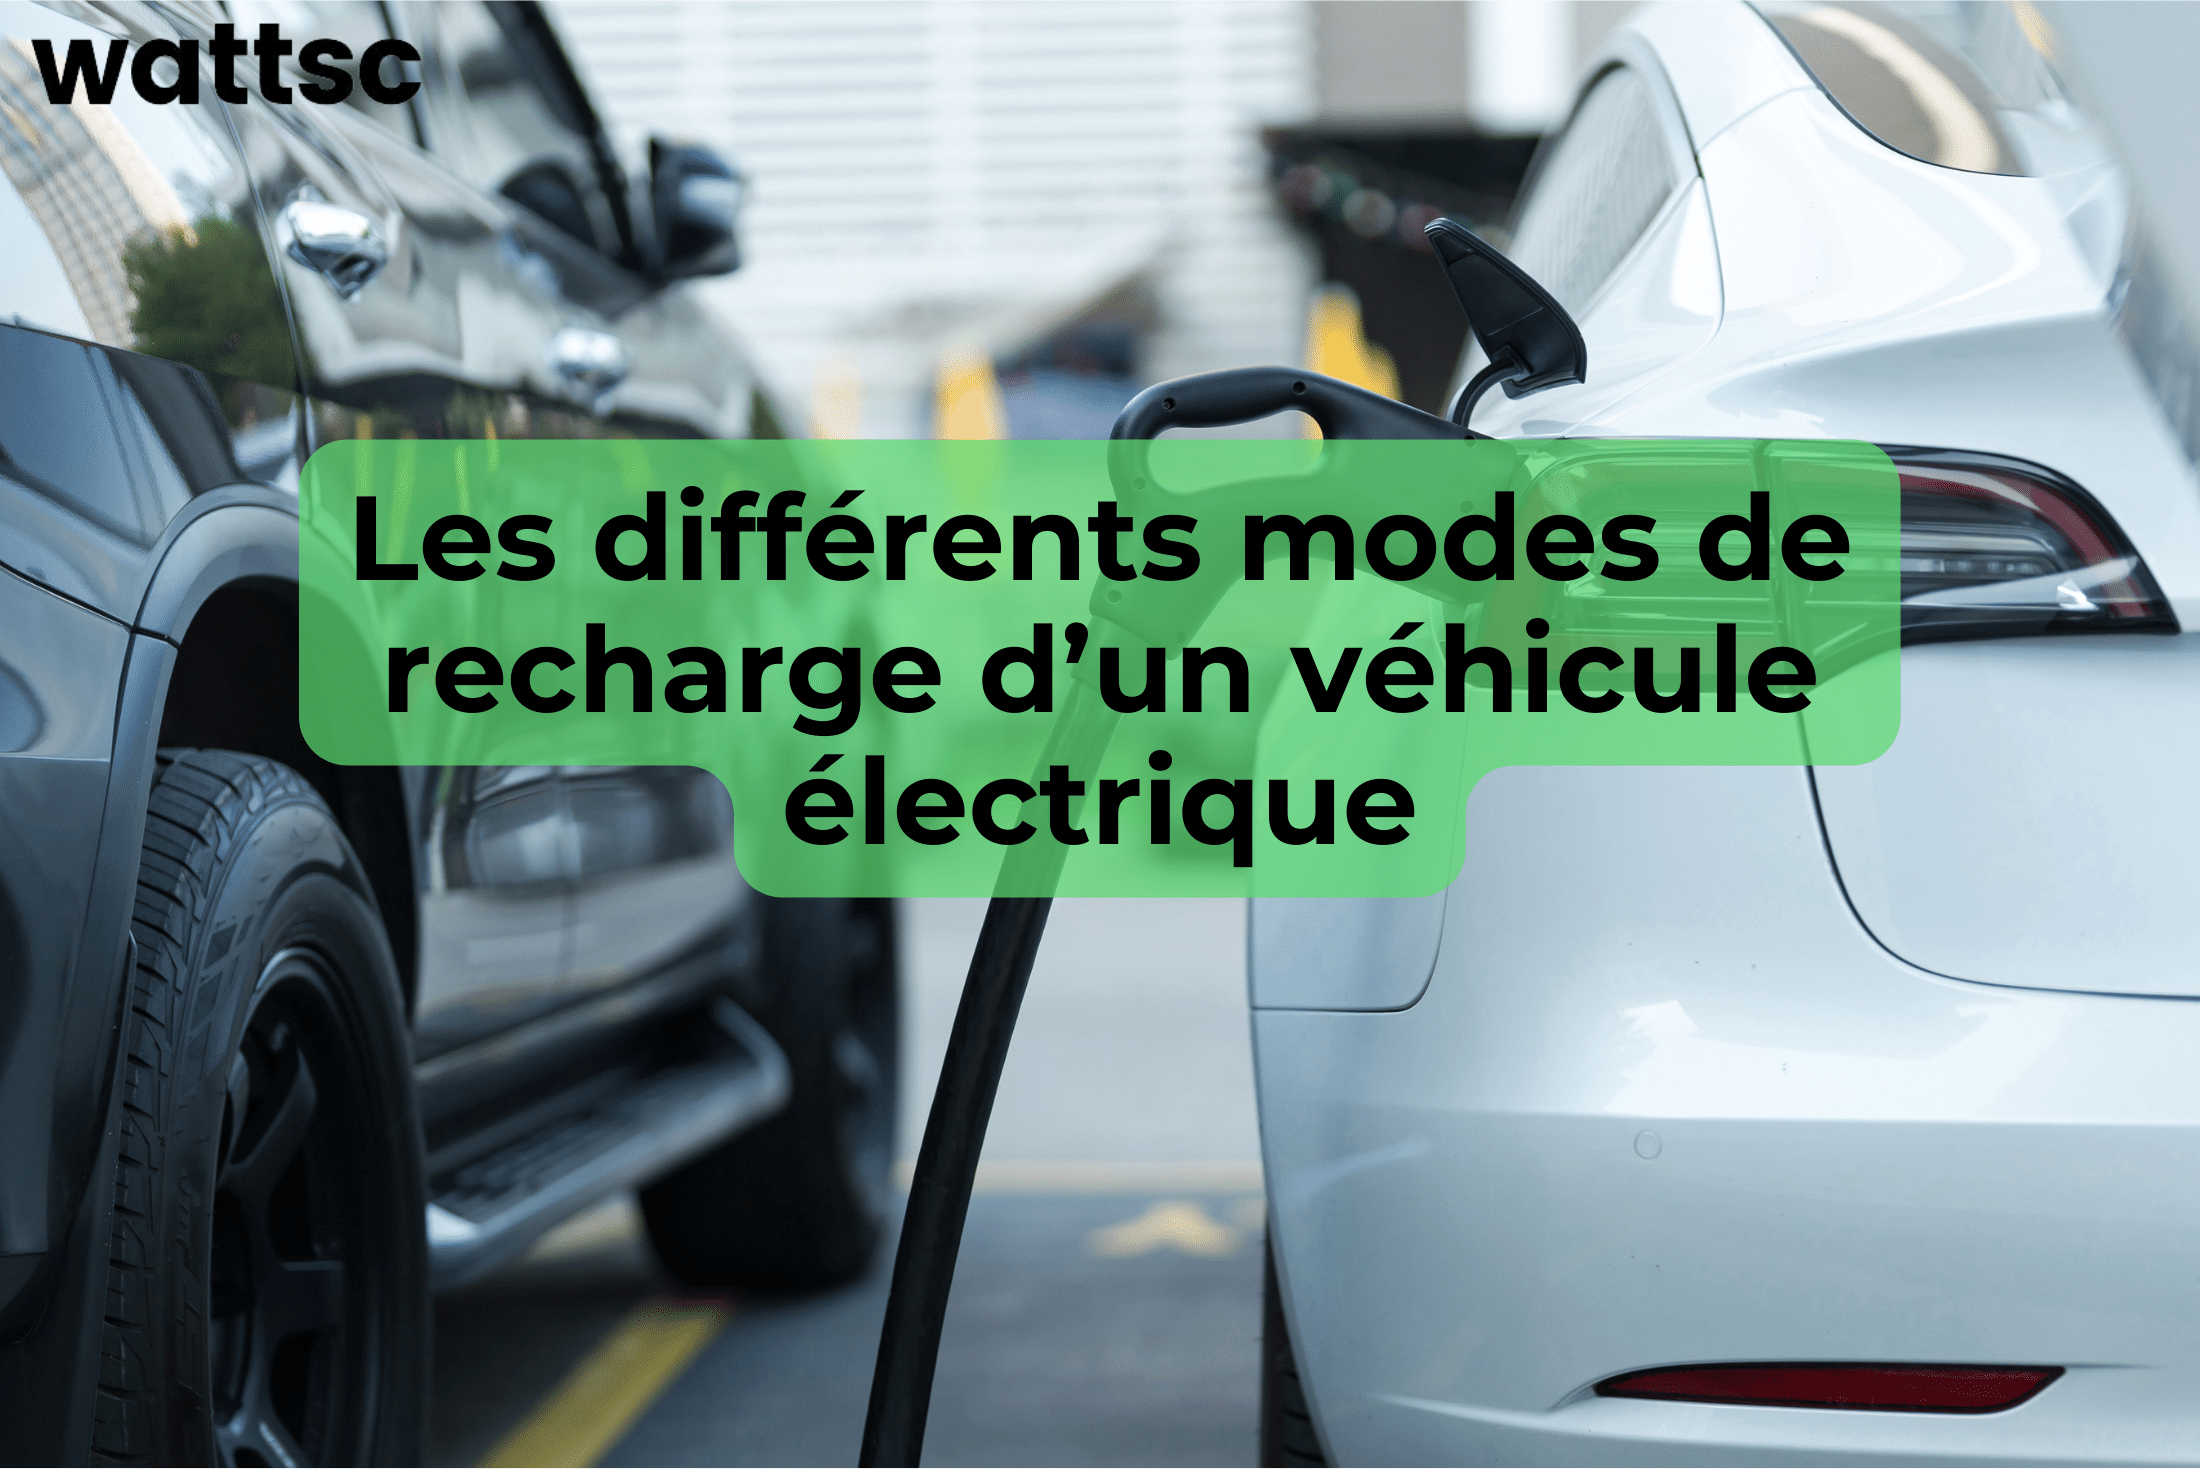 Les différents modes de recharge d'un véhicule électrique